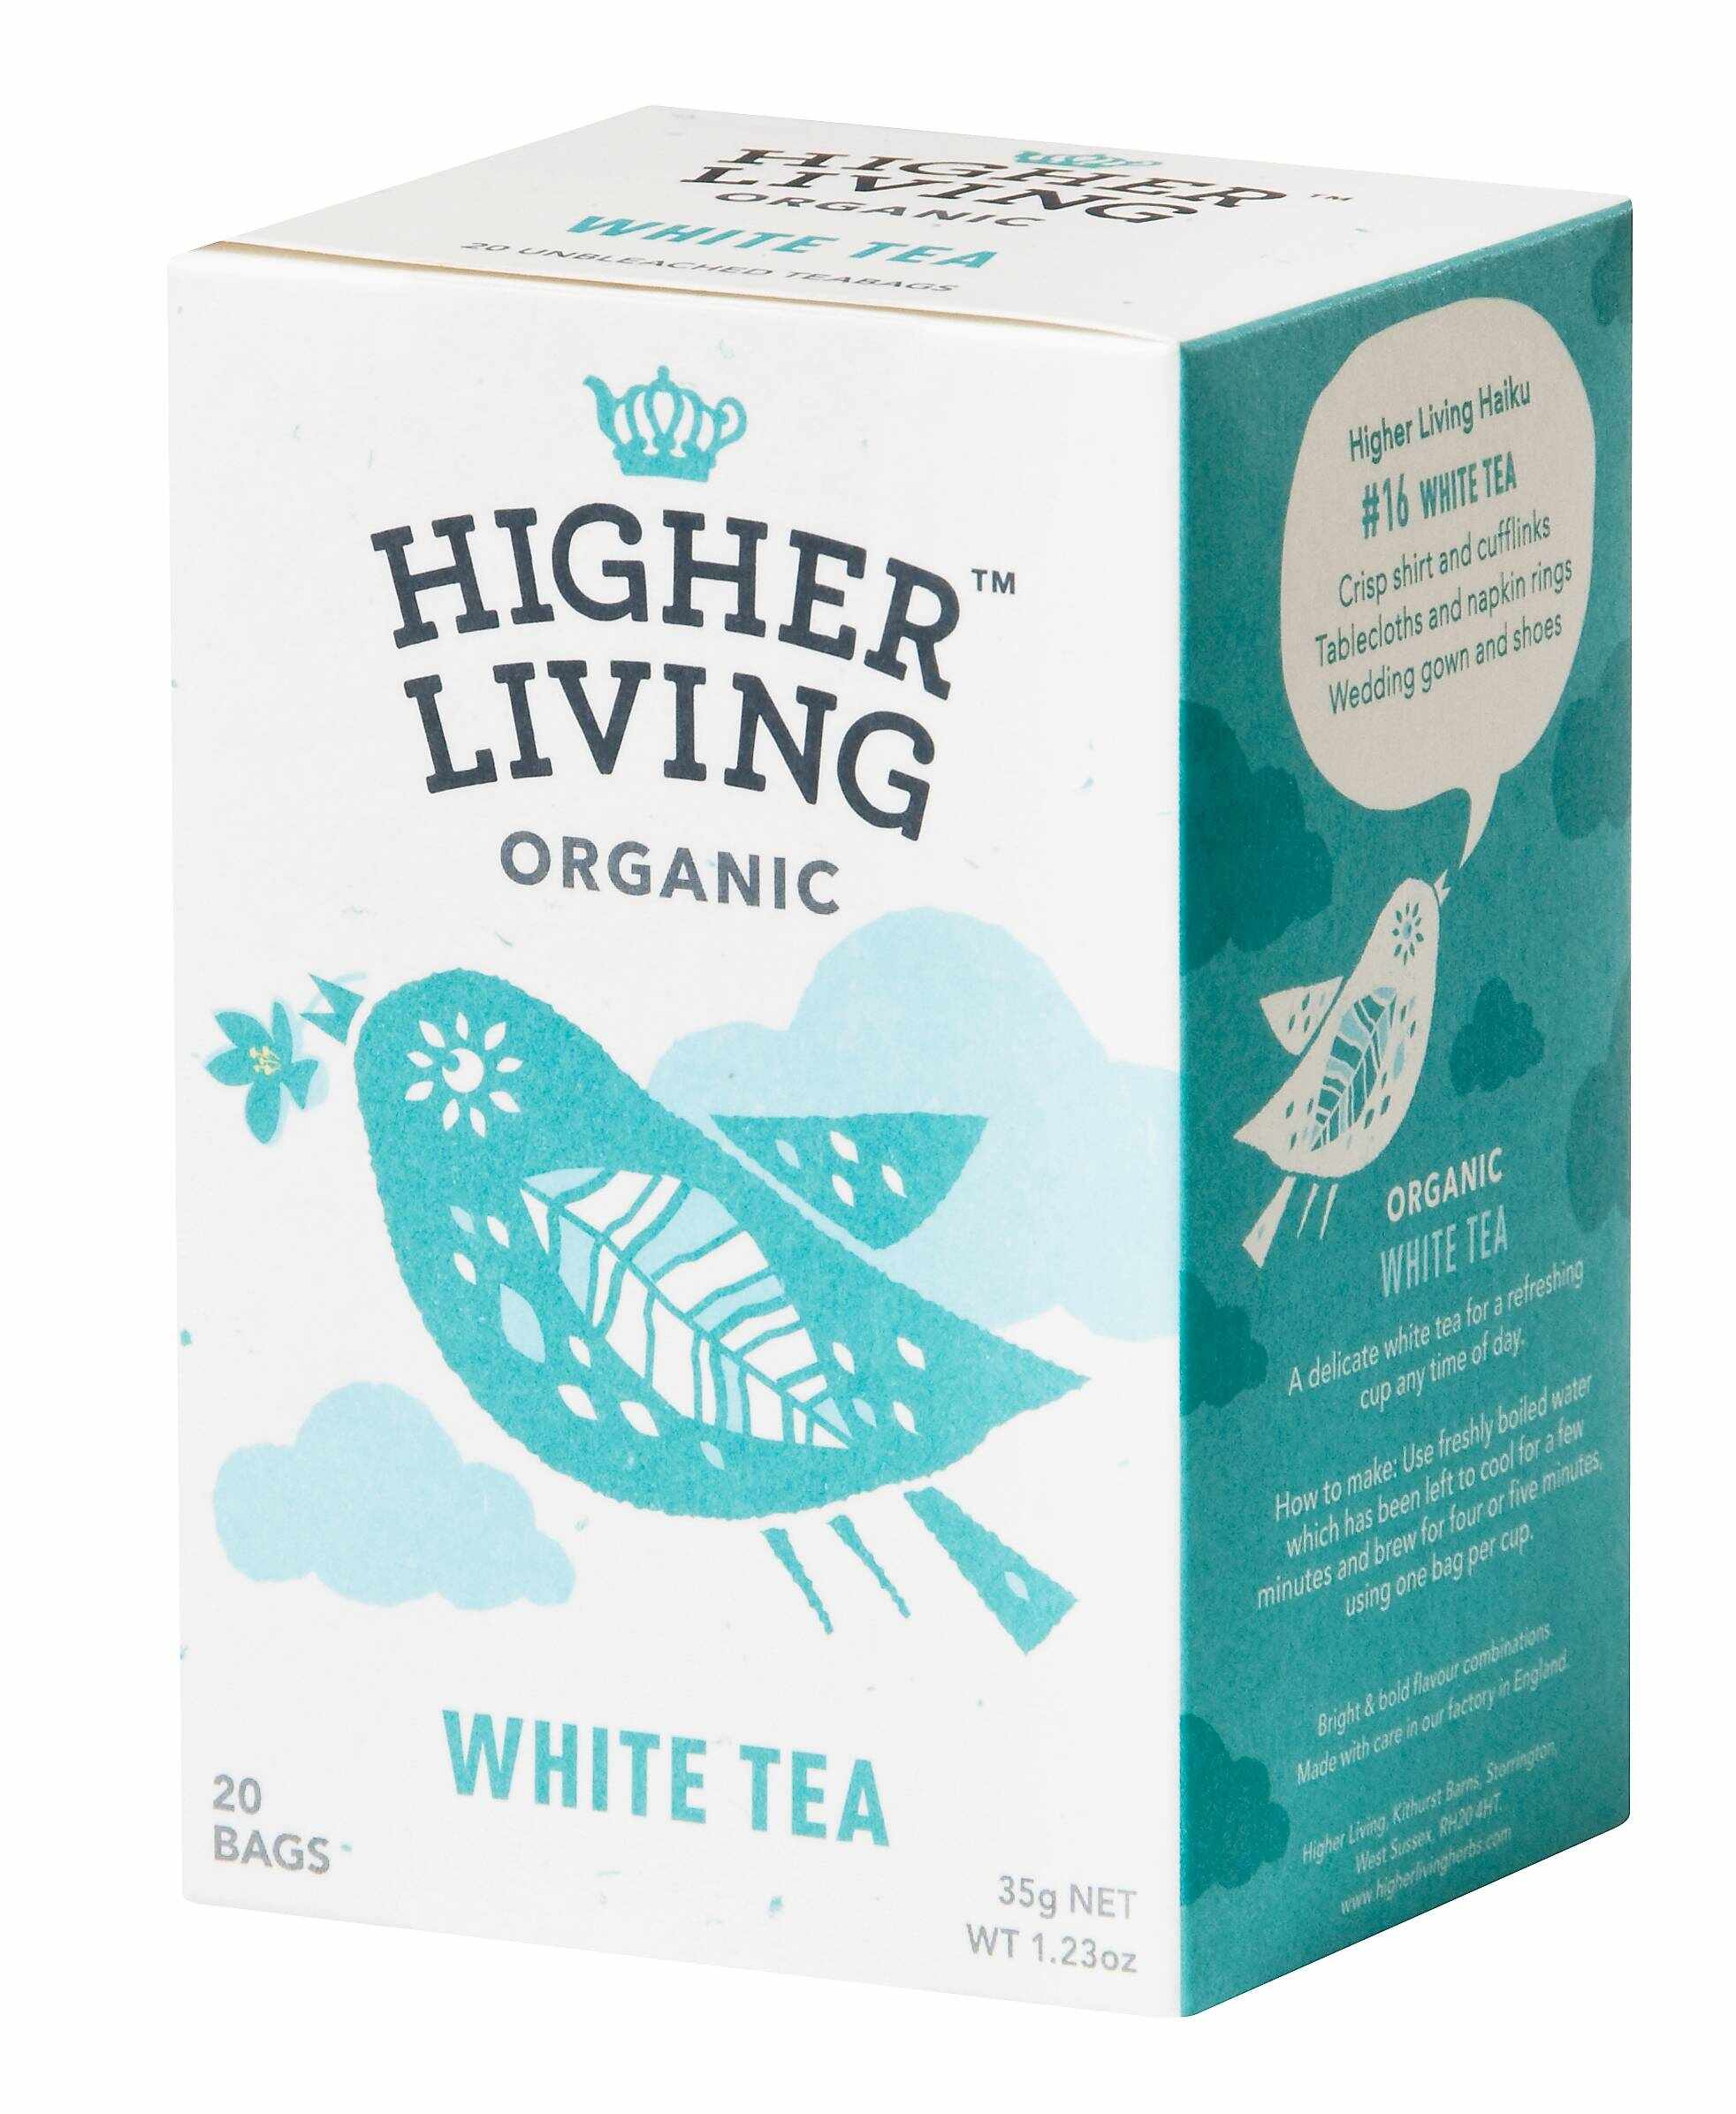 Ceai alb eco-bio, 20 plicuri, Higher Living